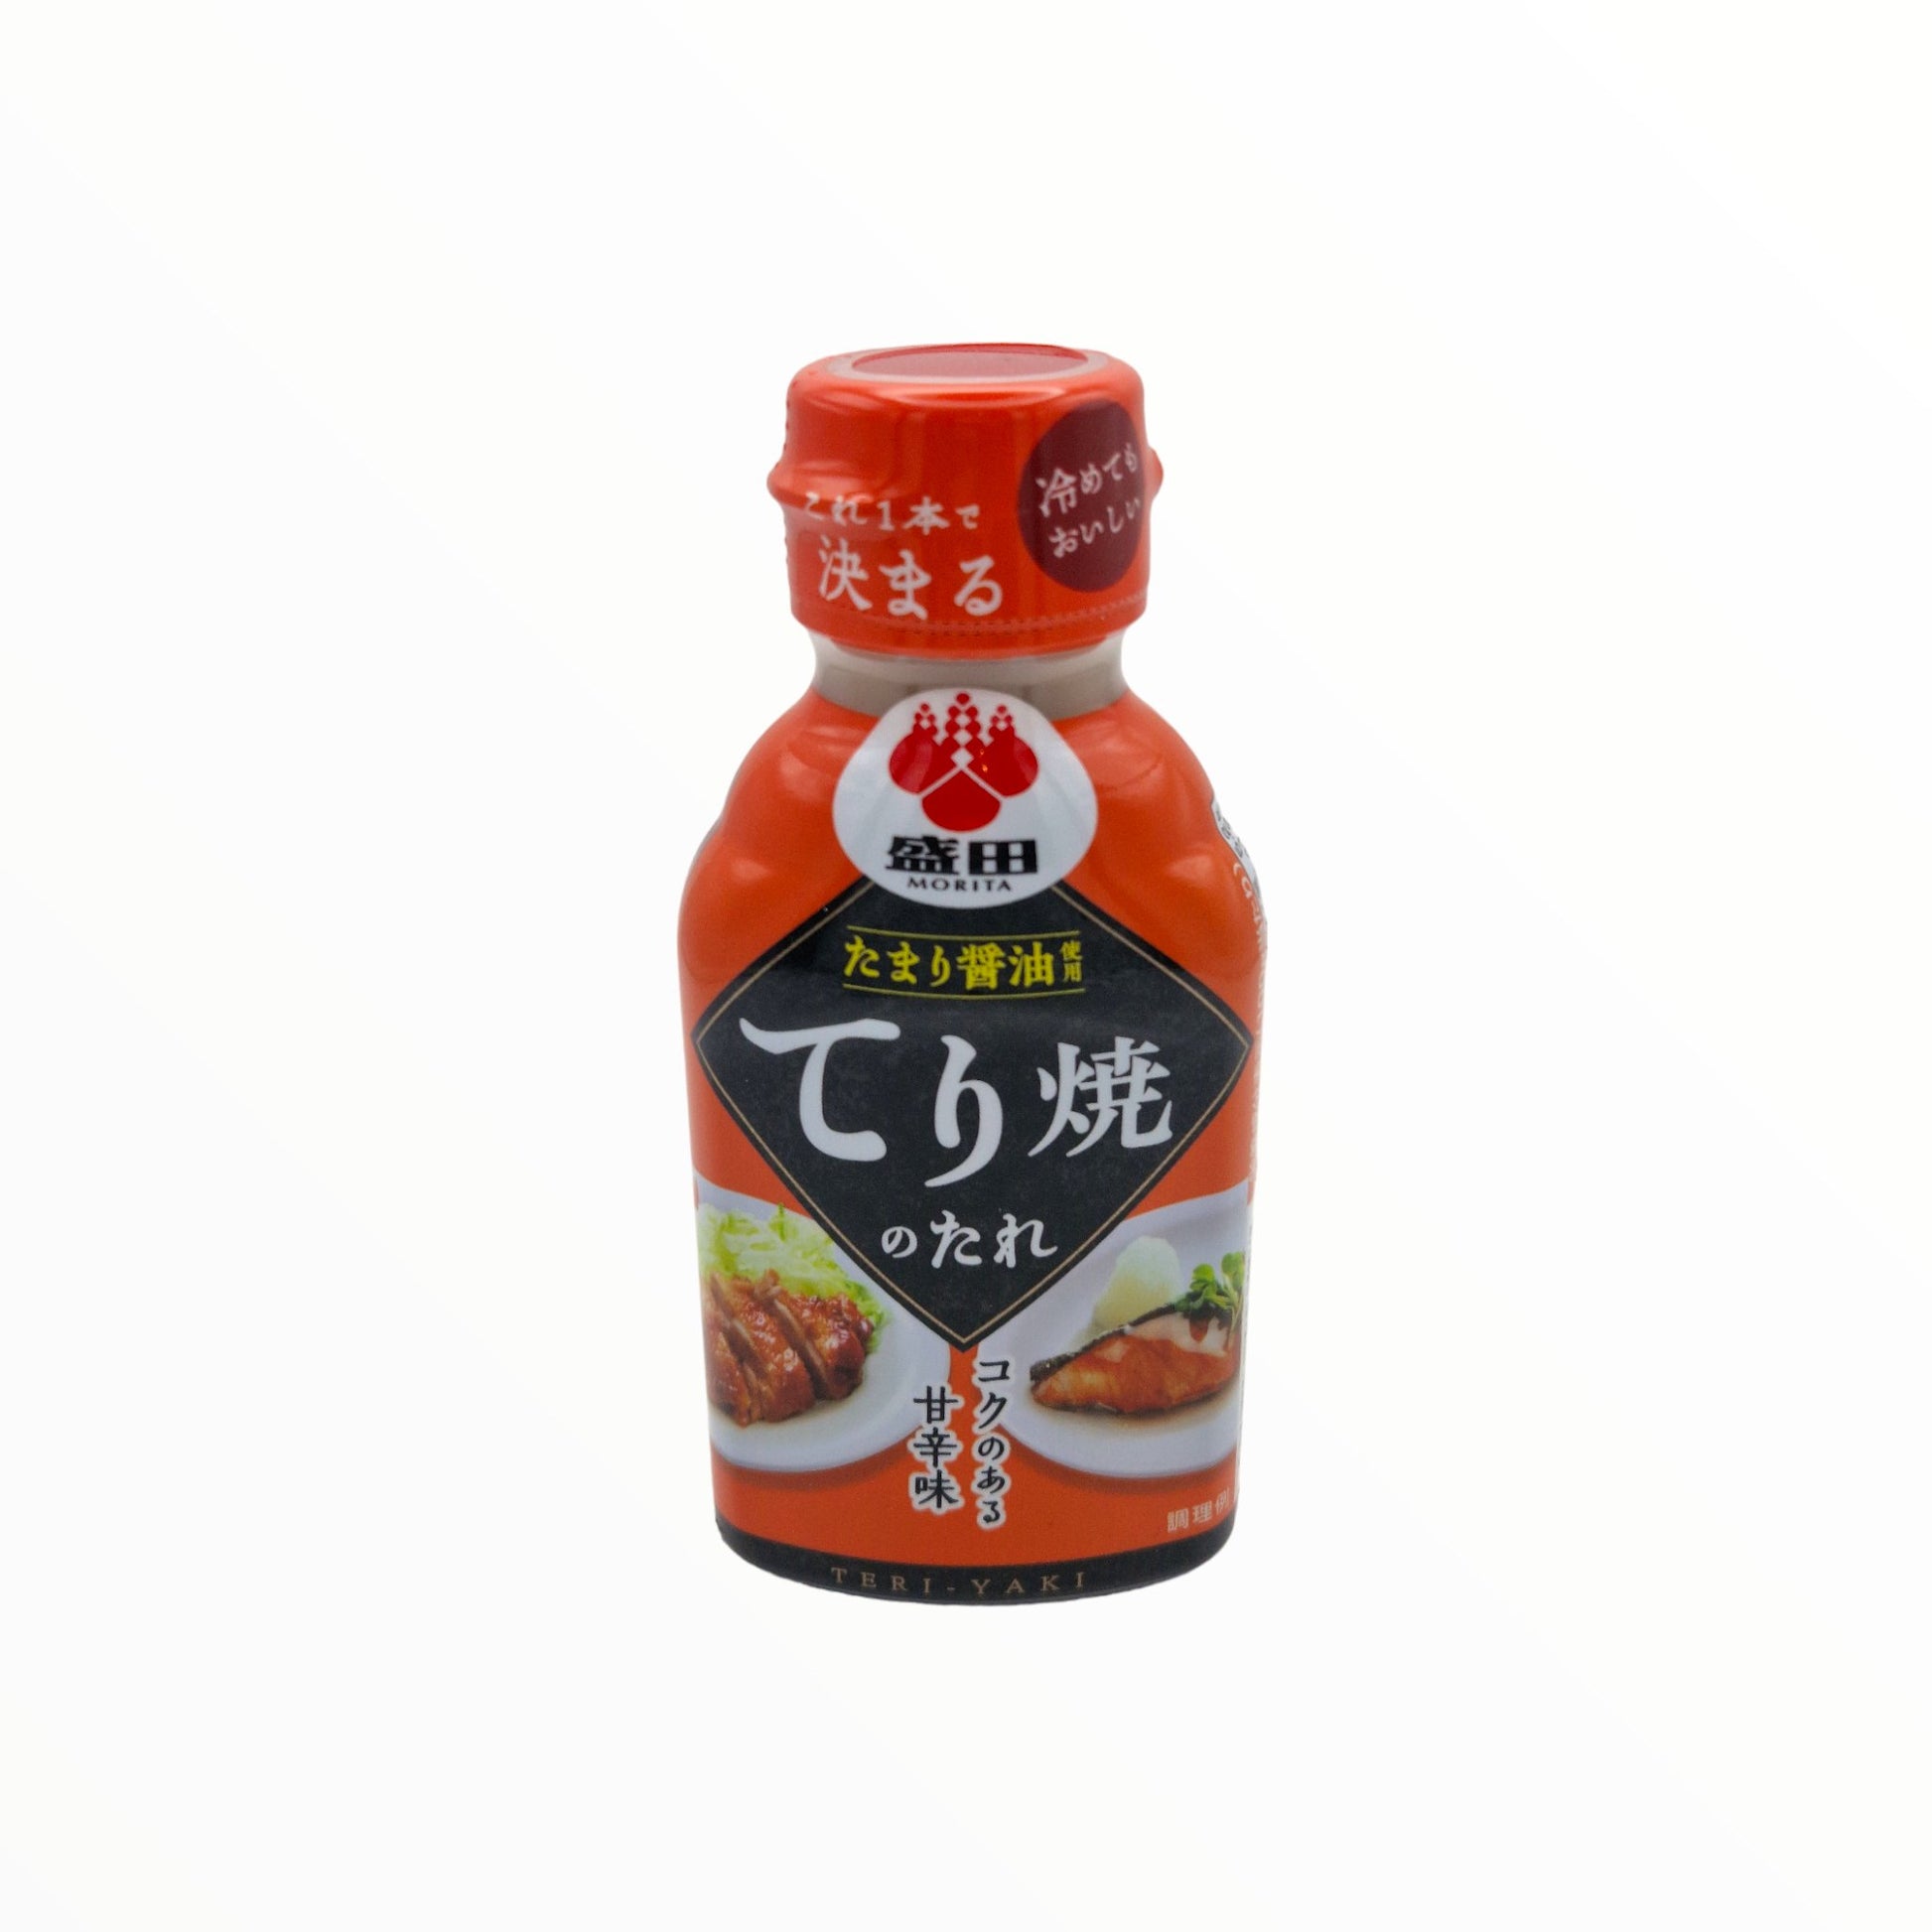 Teriyaki Sauce 150ml - Mabuhay Pinoy Asia Shop